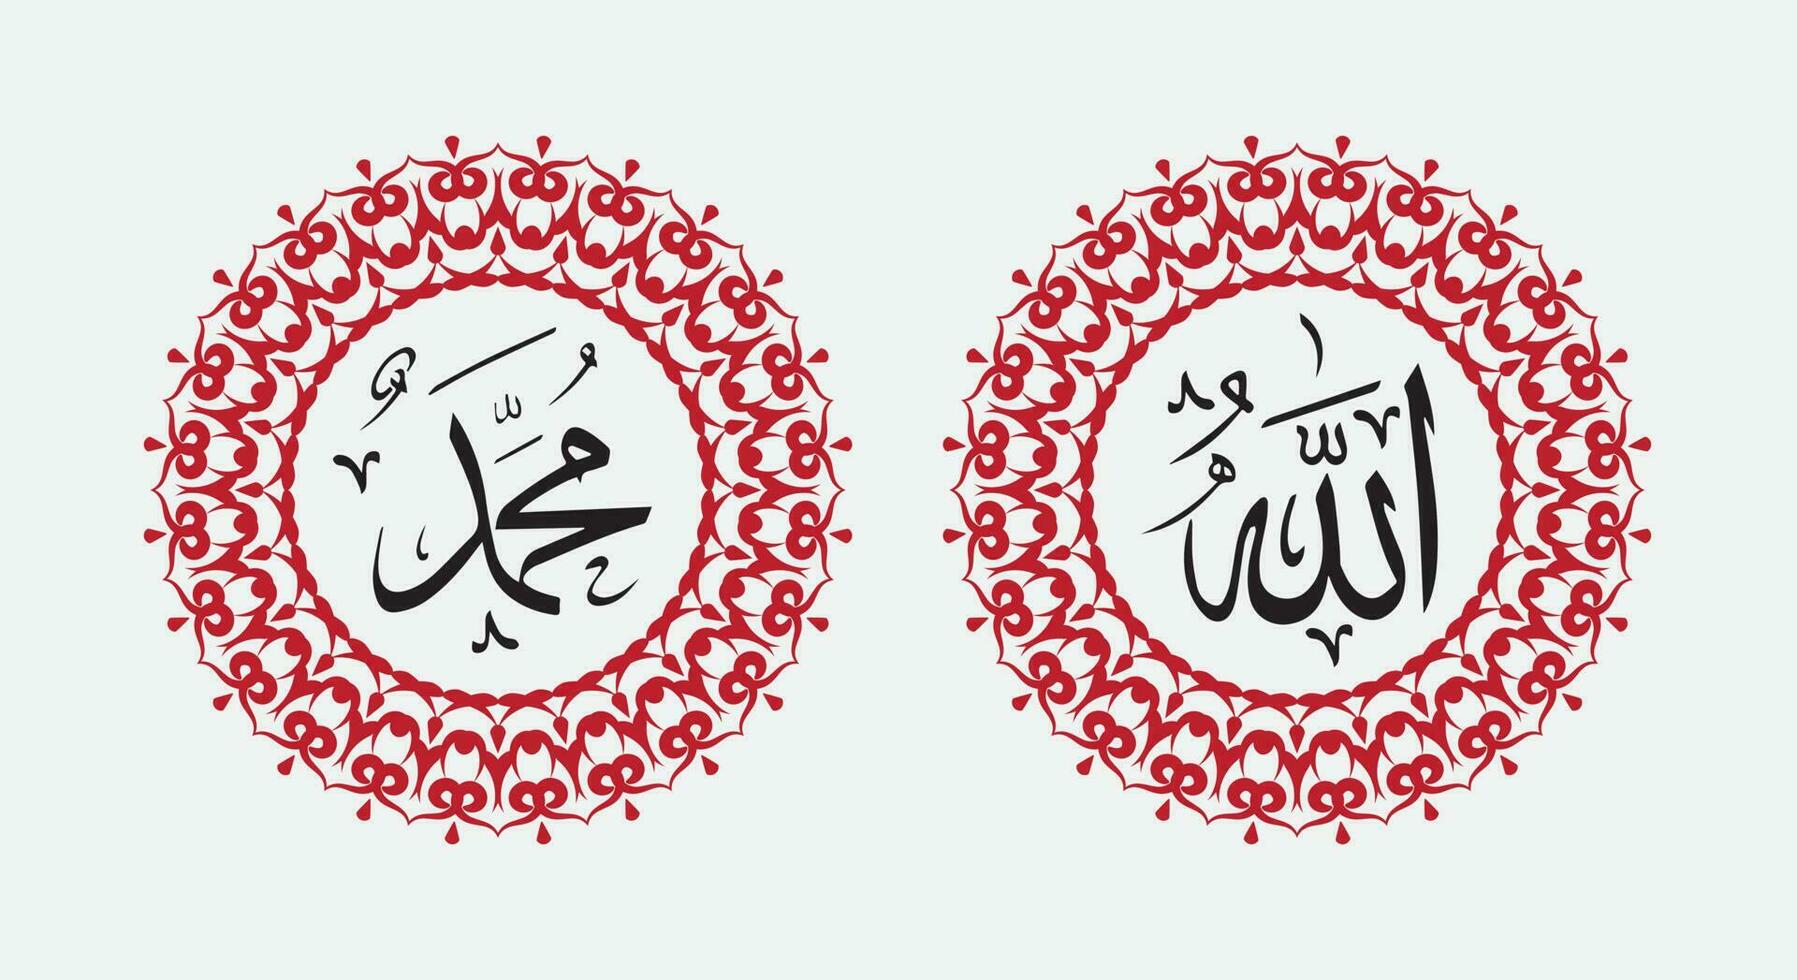 Allah Muhammad Name von Allah Mohammed, Allah Muhammad Arabisch islamisch Kalligraphie Kunst, mit traditionell Rahmen und elegant Farbe vektor